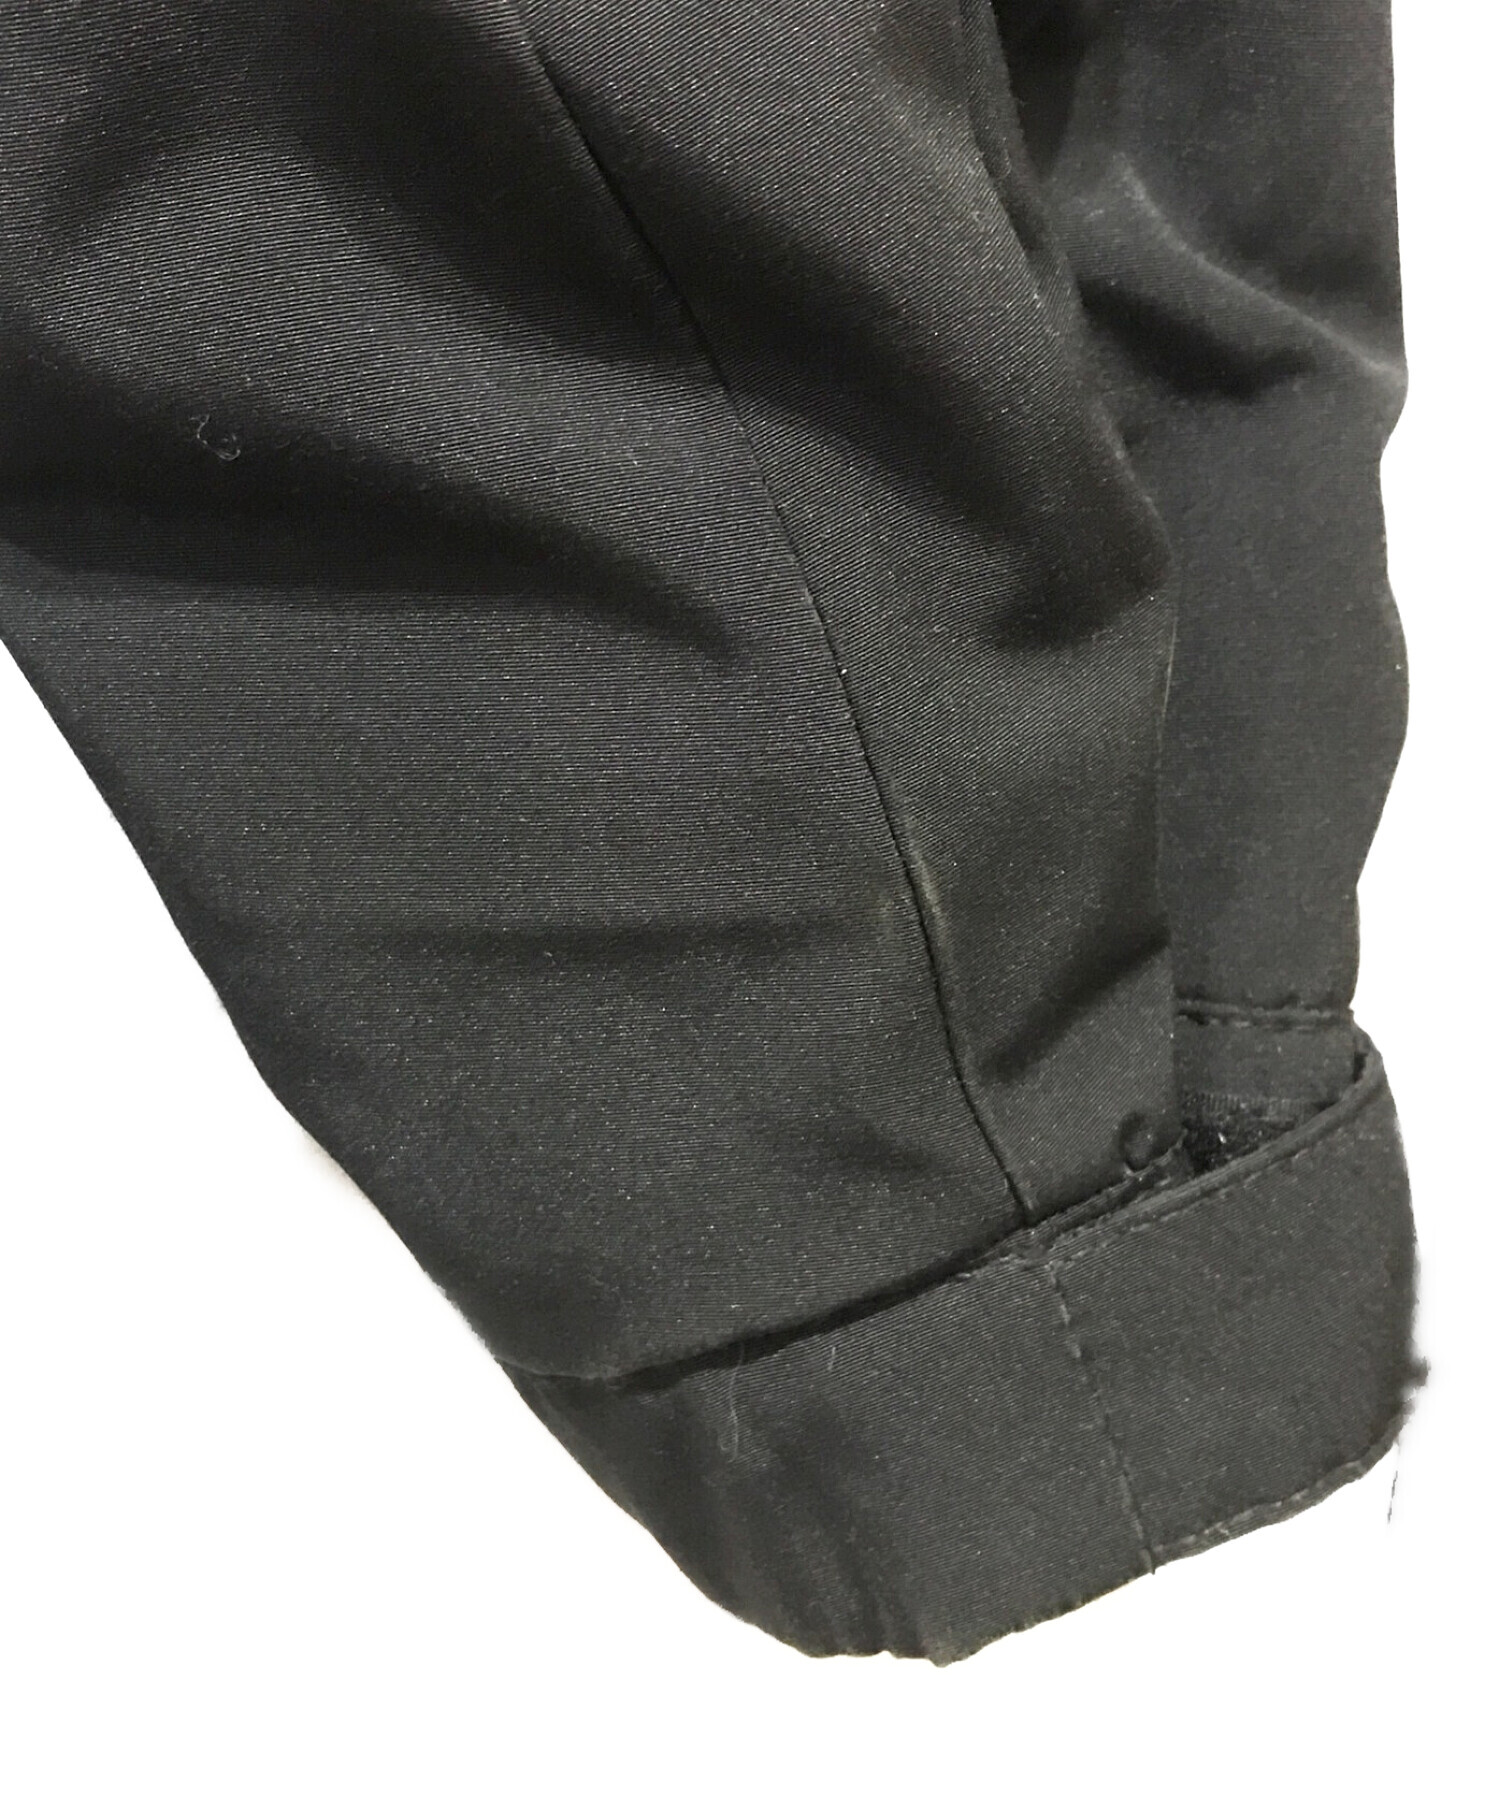 AVIREX (アヴィレックス) インサレーションジャケット ブラック サイズ:XL